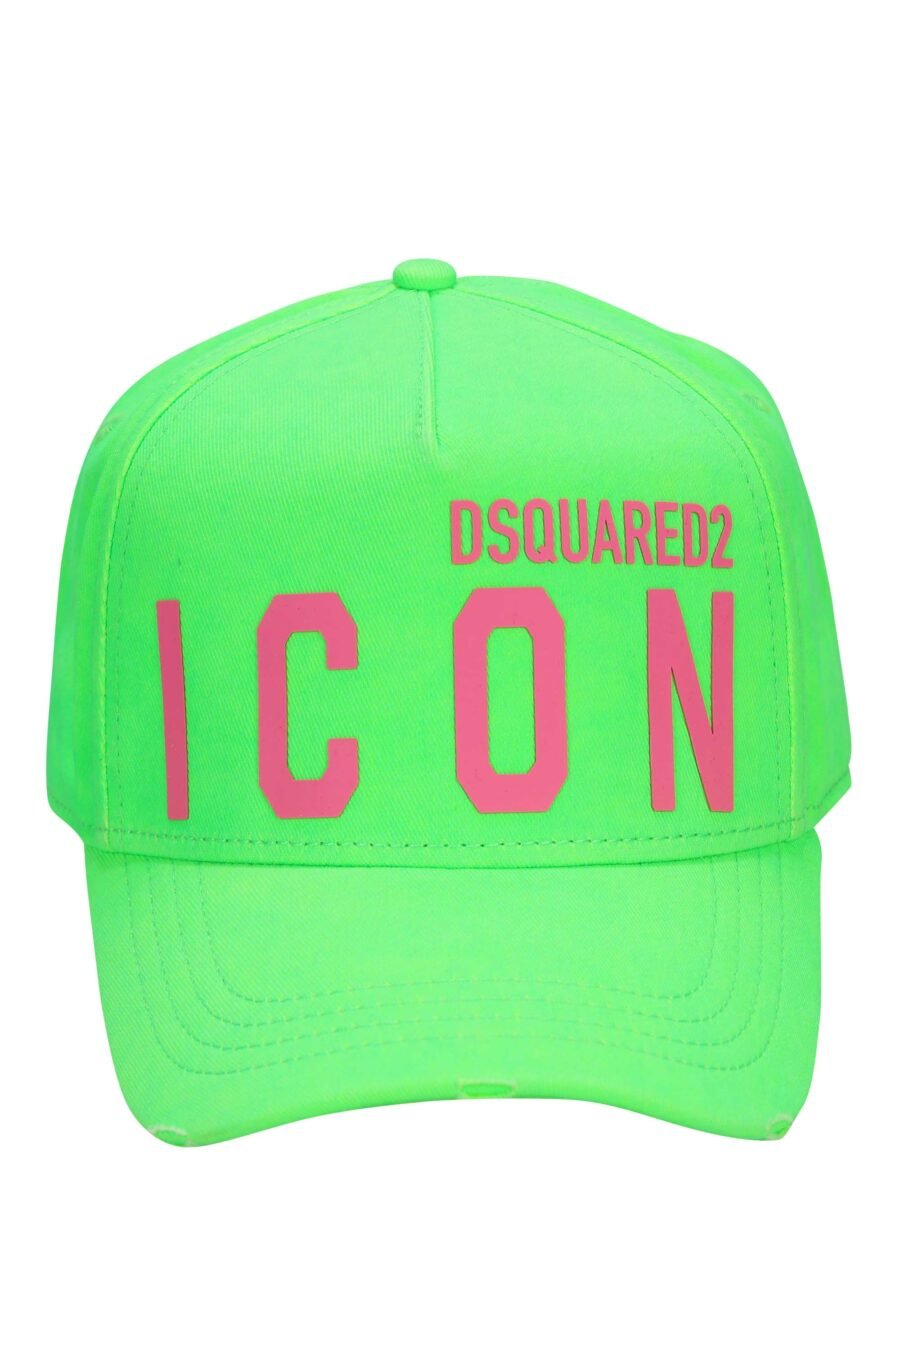 Gorra verde neón con maxilogo "icon" fucsia - 8055777275597